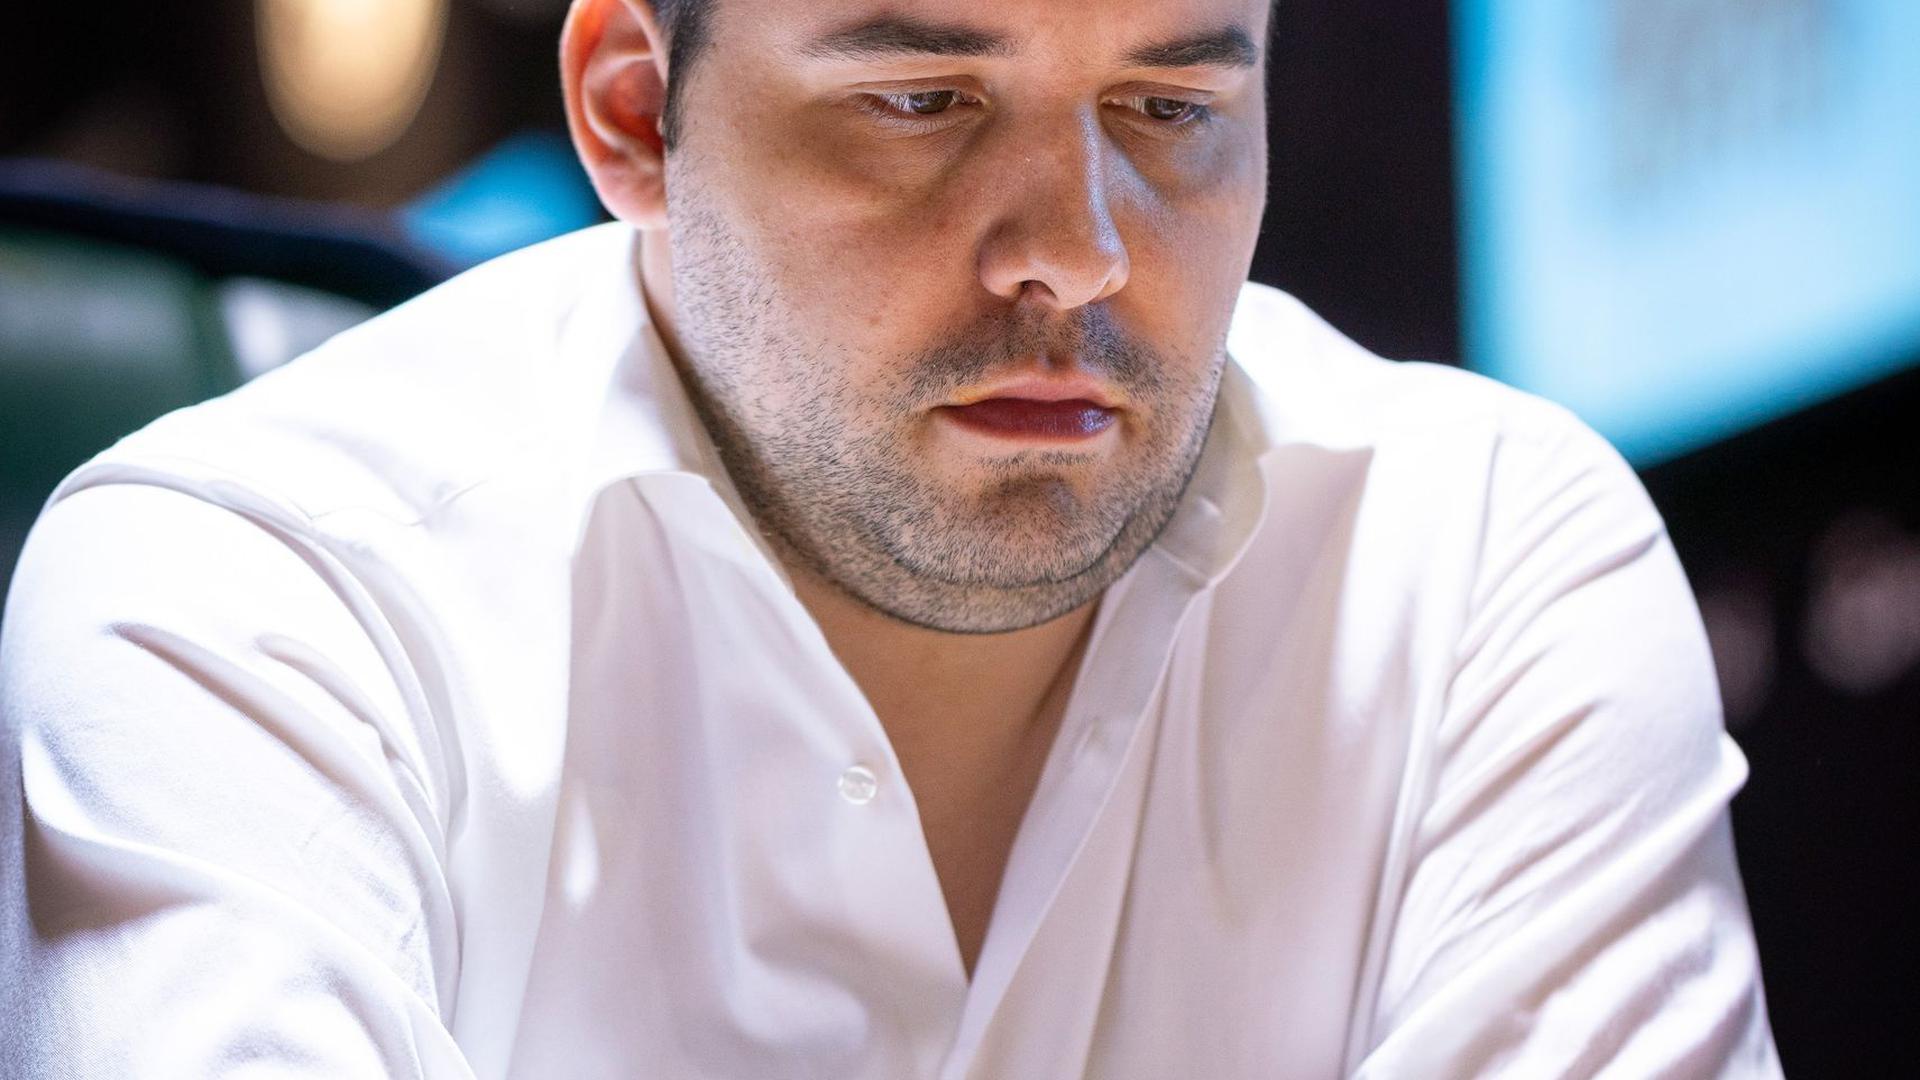 Jan Nepomnjaschtschi aus Russland war bisher immer ein schwerer Gegner für Weltmeister Magnus Carlsen.